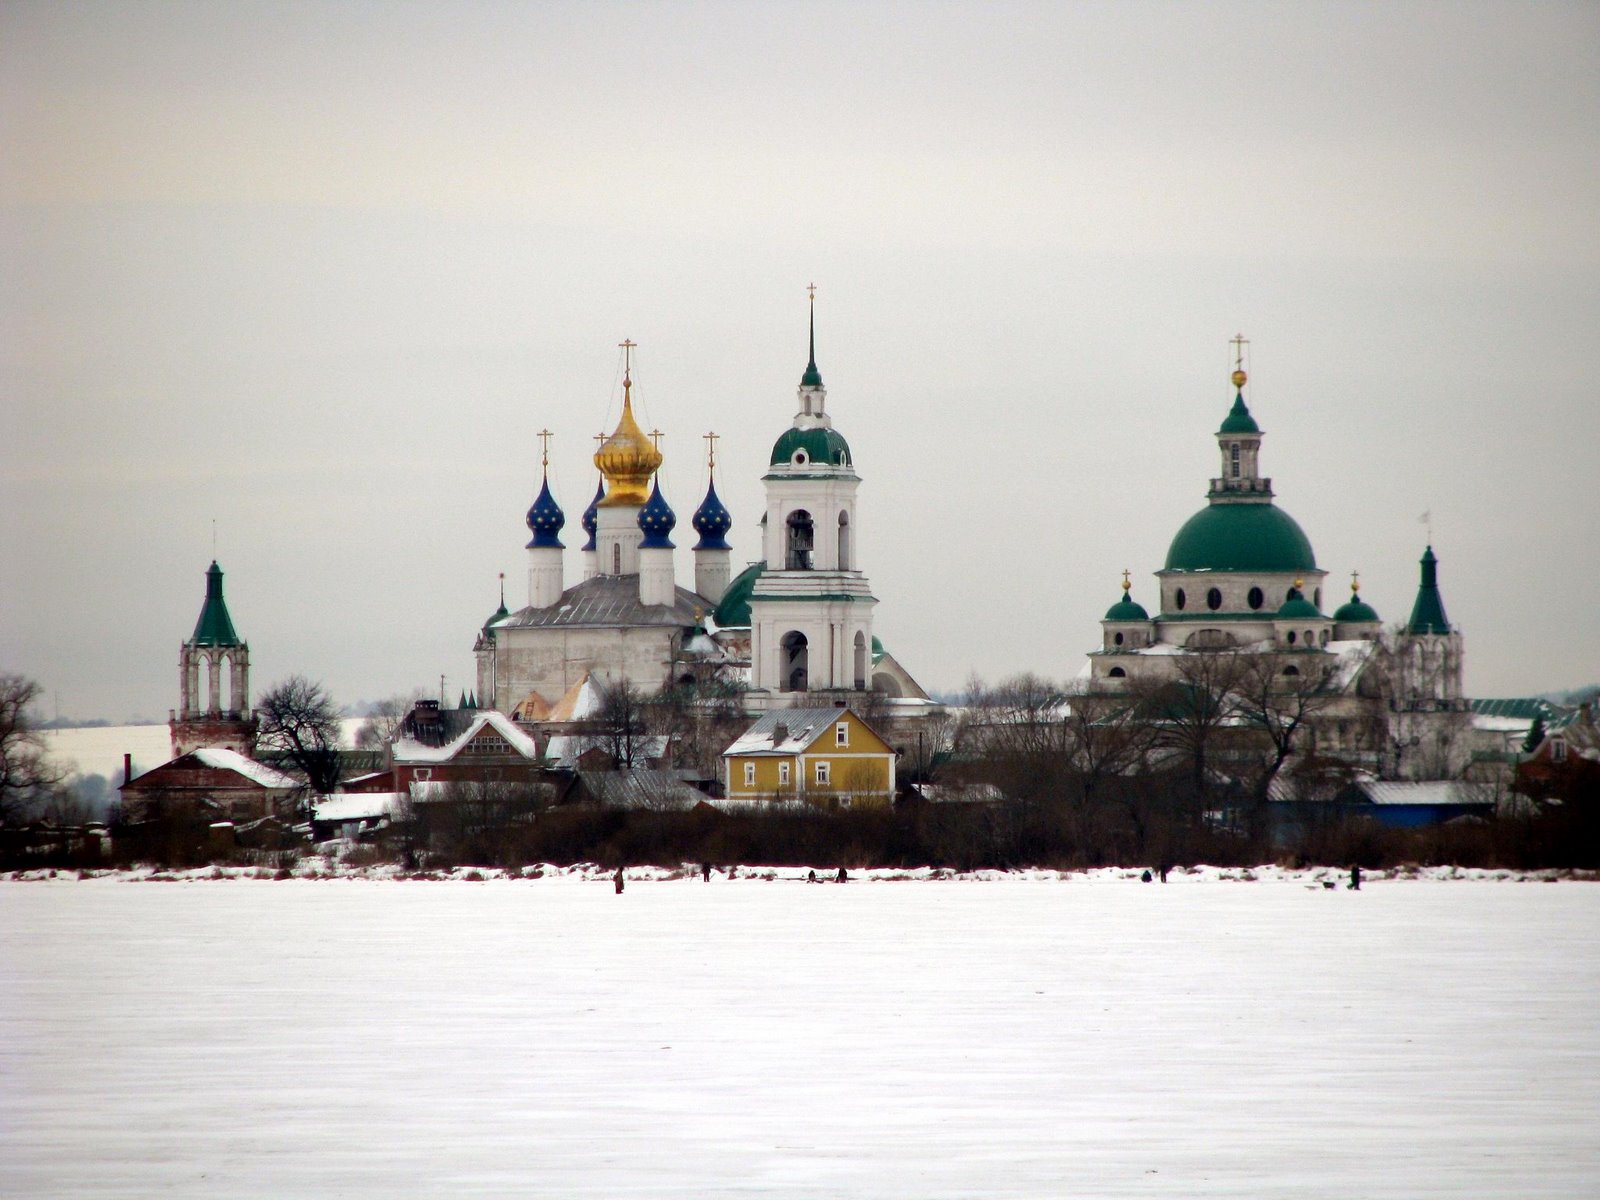 Lac complètement gelé où l'on peut marcher dessus. En fond, le Kremlin de Rostov et son église orthodoxe